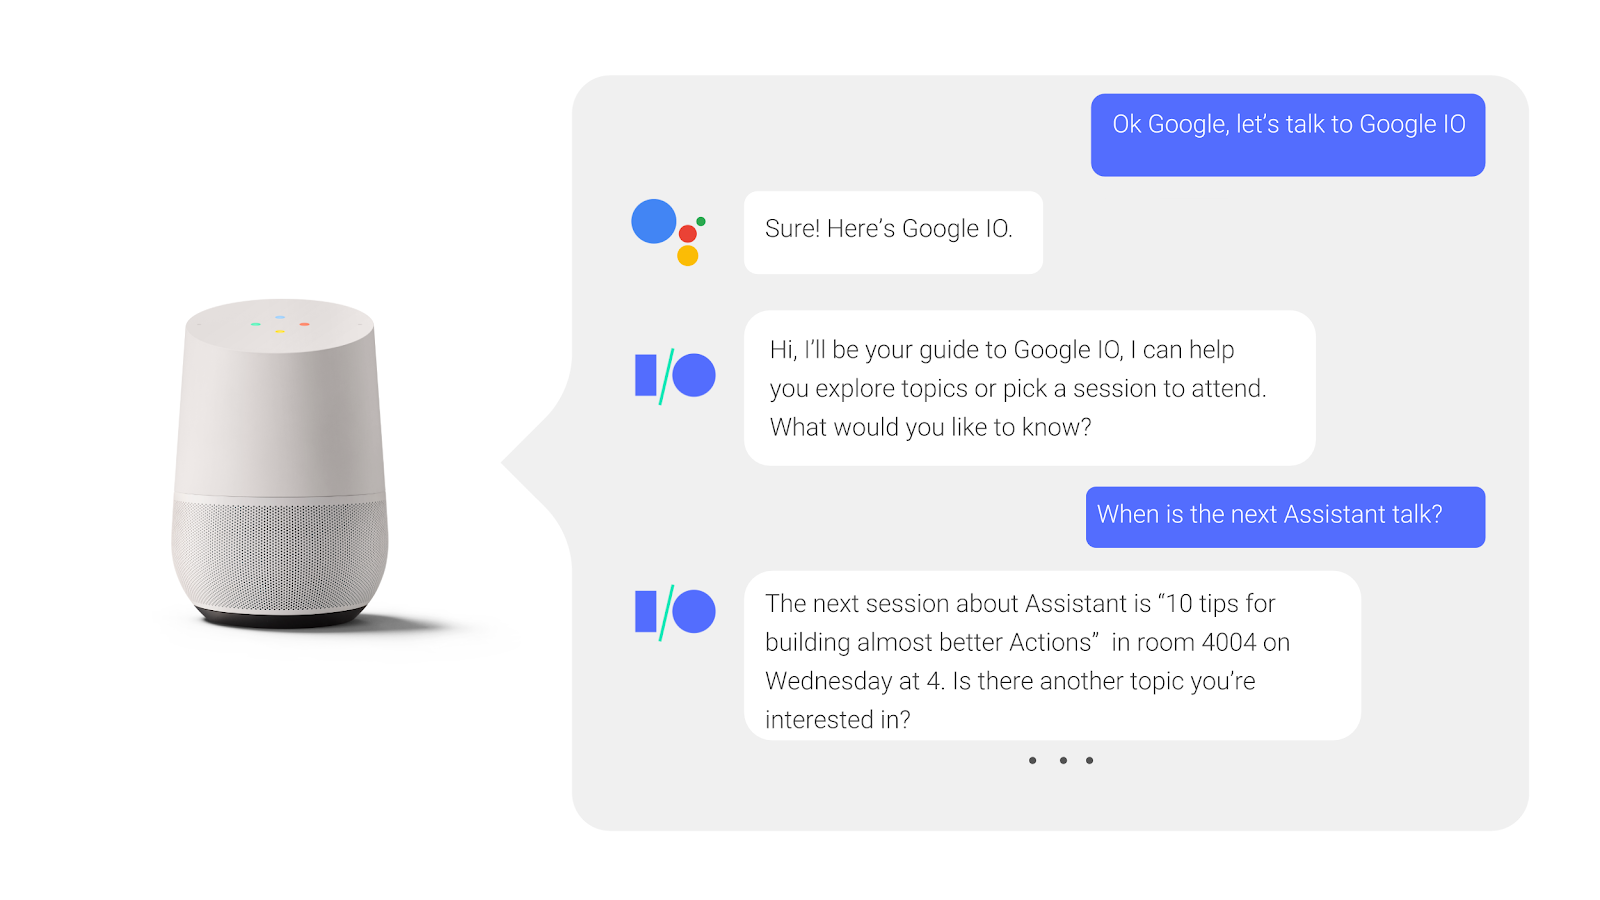 Google Assistant से, समय-समय पर
    बातचीत करने पर, उपयोगकर्ता
    कॉन्फ़्रेंस के किसी सेशन के बारे में पूछता है और जवाब देता है.